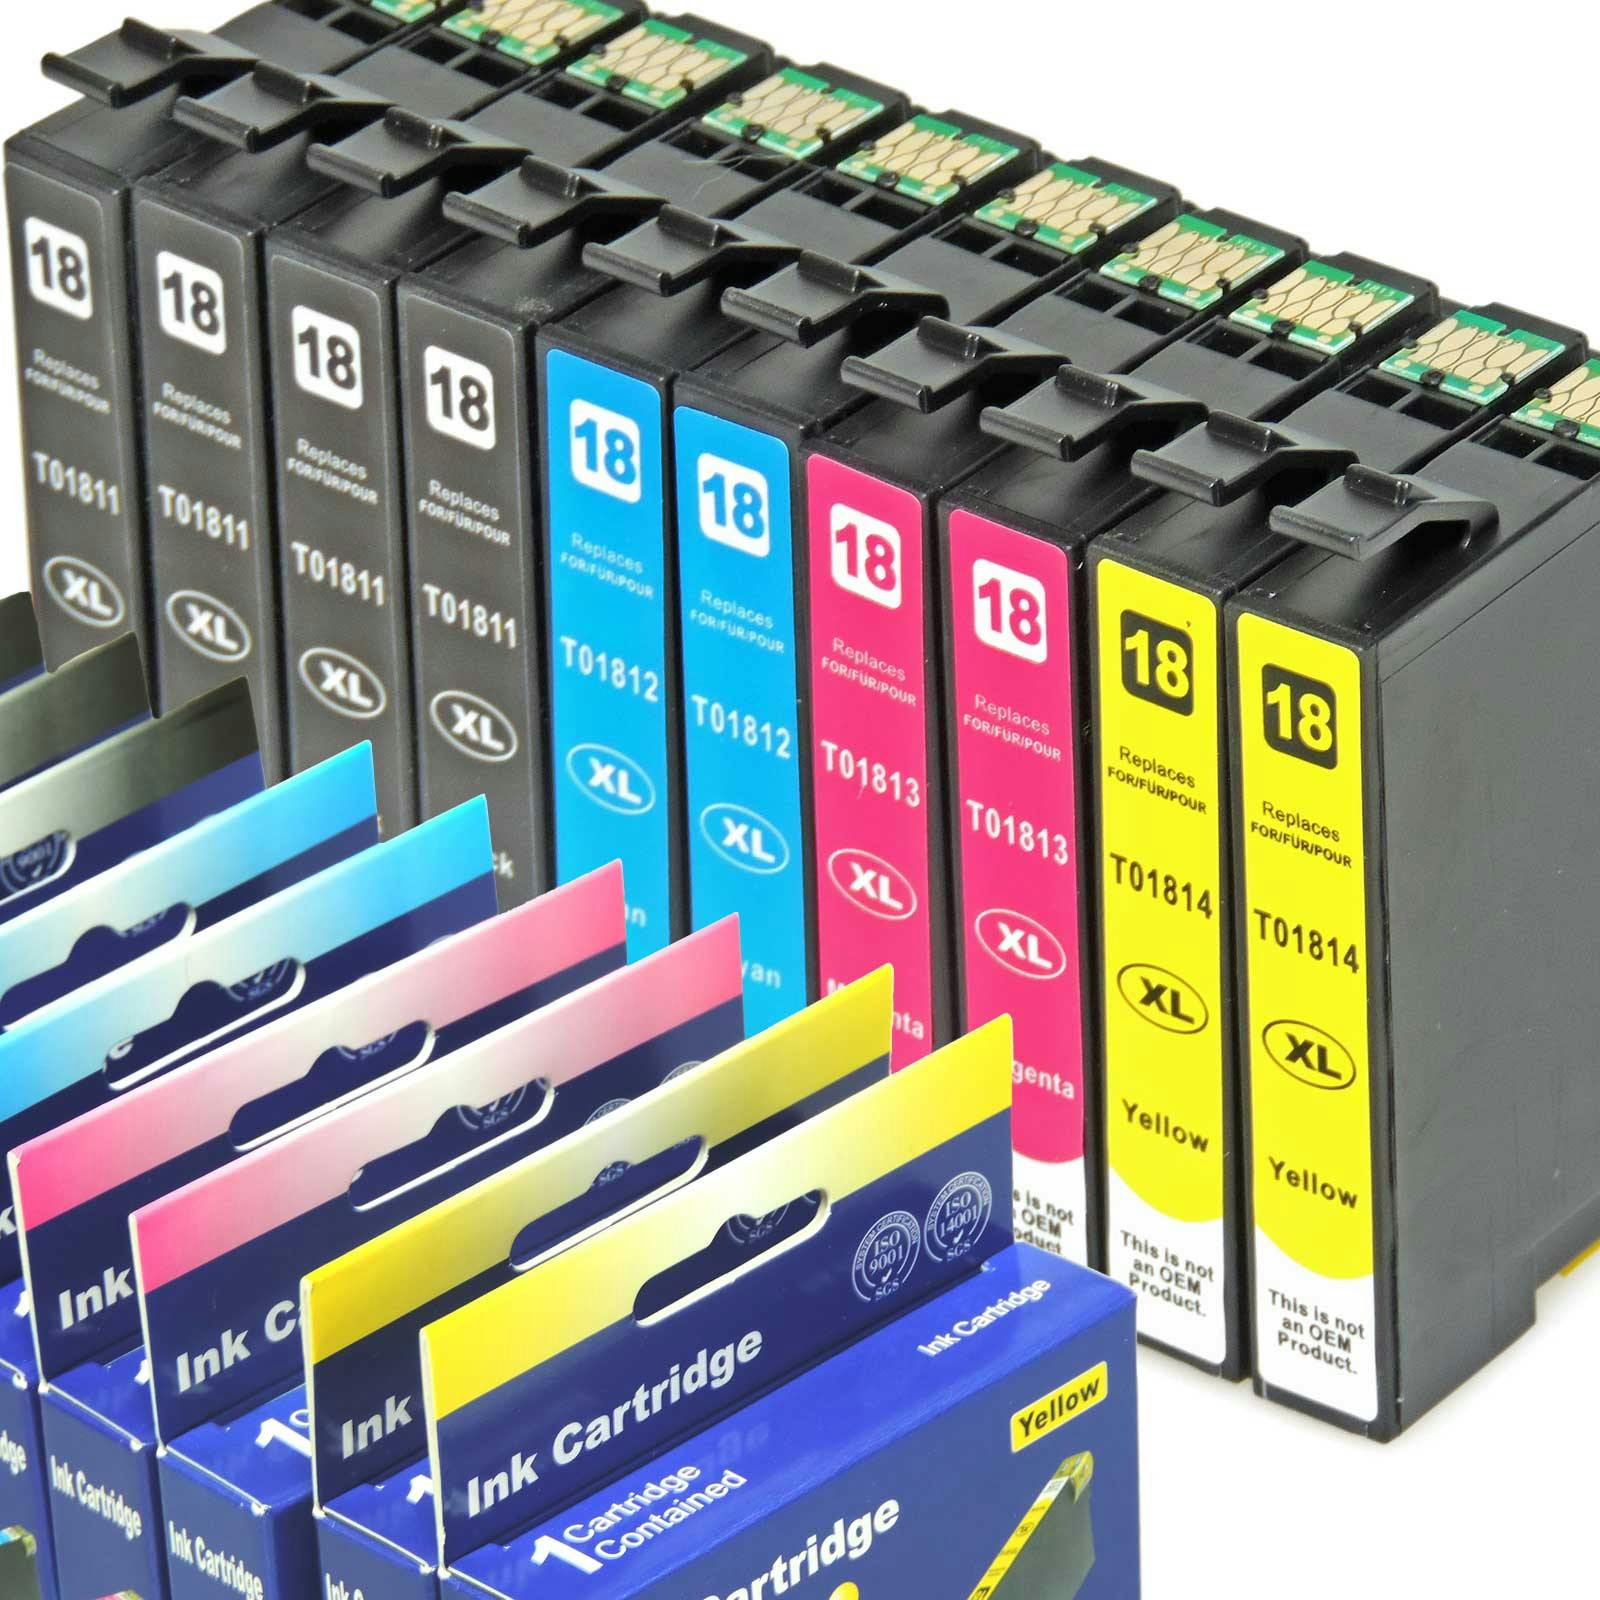 REAL 10 Druckerpatronen Set Tinte für Epson Expression Home XP Drucker.  Ersetzt Epson 18XL | METRO Marktplatz